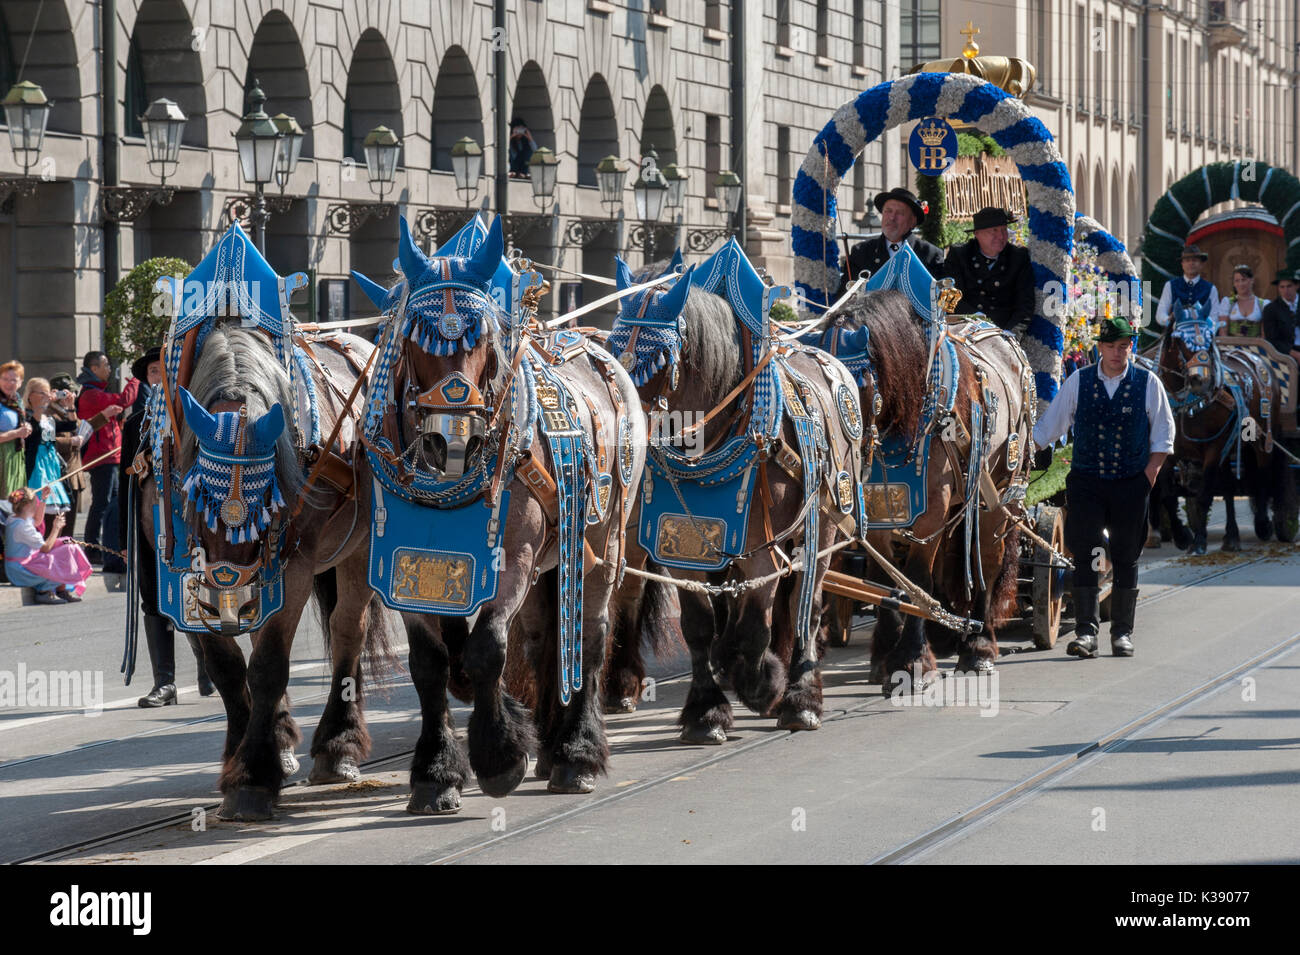 Oktoberfest en Munich es el mayor festival de folk y cerveza en el mundo. El desfile inaugural tendrá lugar público con 9000 participantes Foto de stock